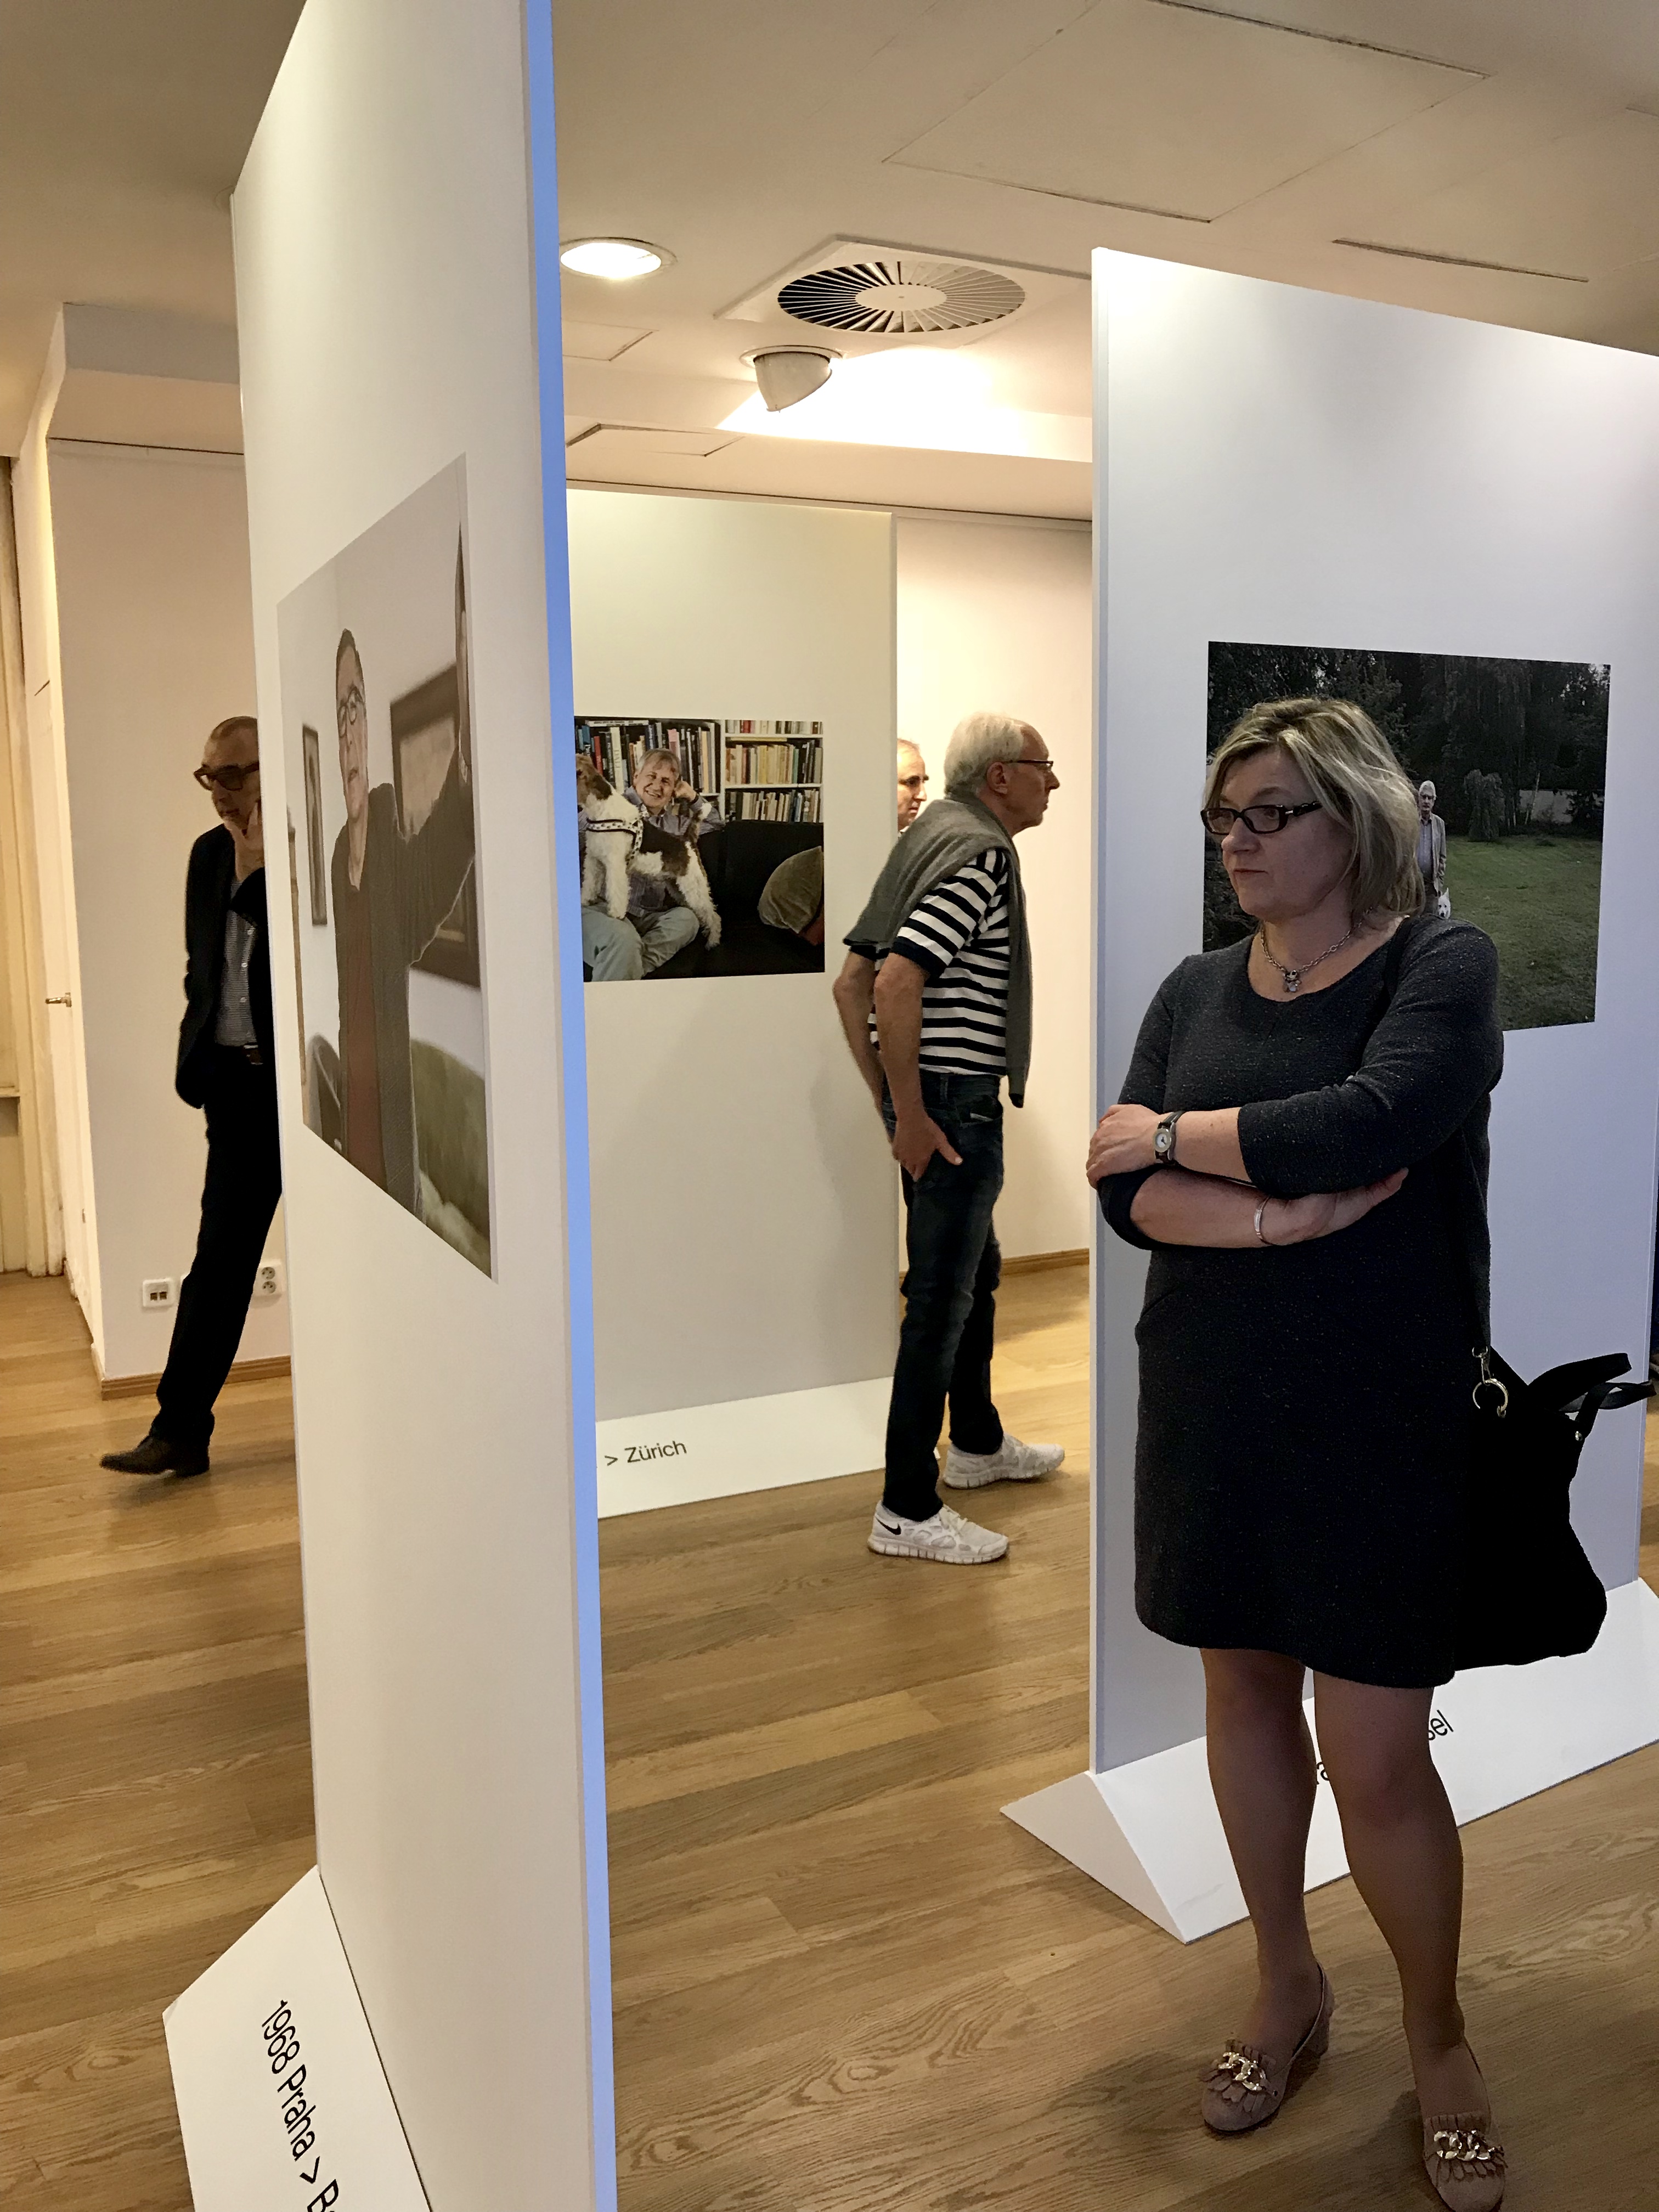 Dne 10.04. 2018 se v Galerii kritiků uskutečnila komentovaná prohlídka. Hosty prohlídky expozicí prováděla fotografka Iren Stehli.